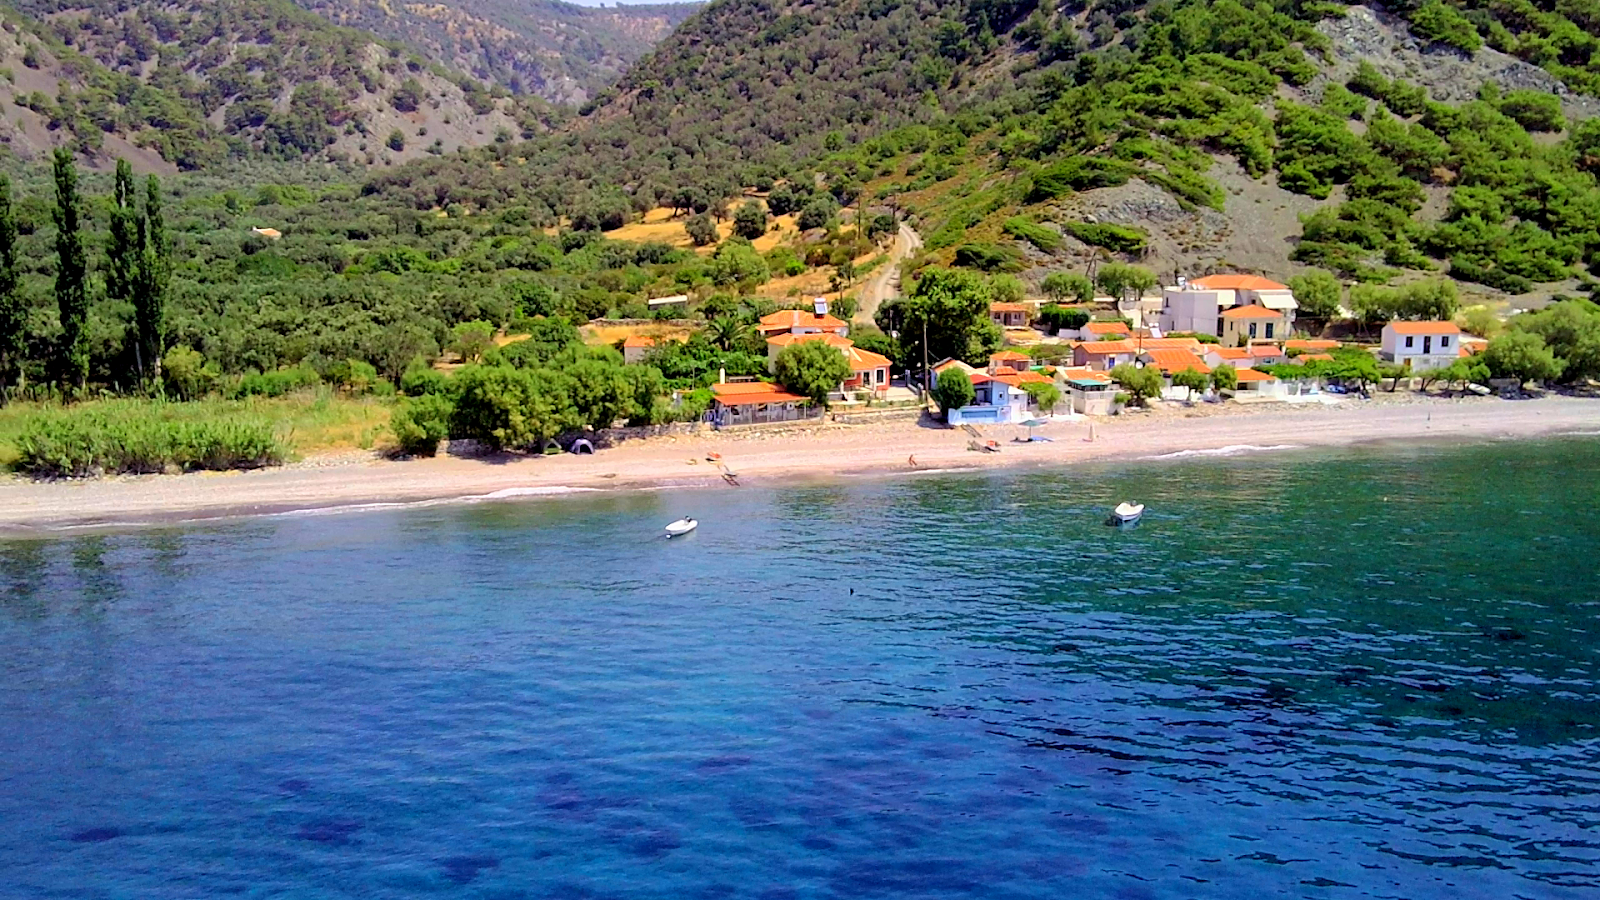 Drotas beach'in fotoğrafı geniş plaj ile birlikte